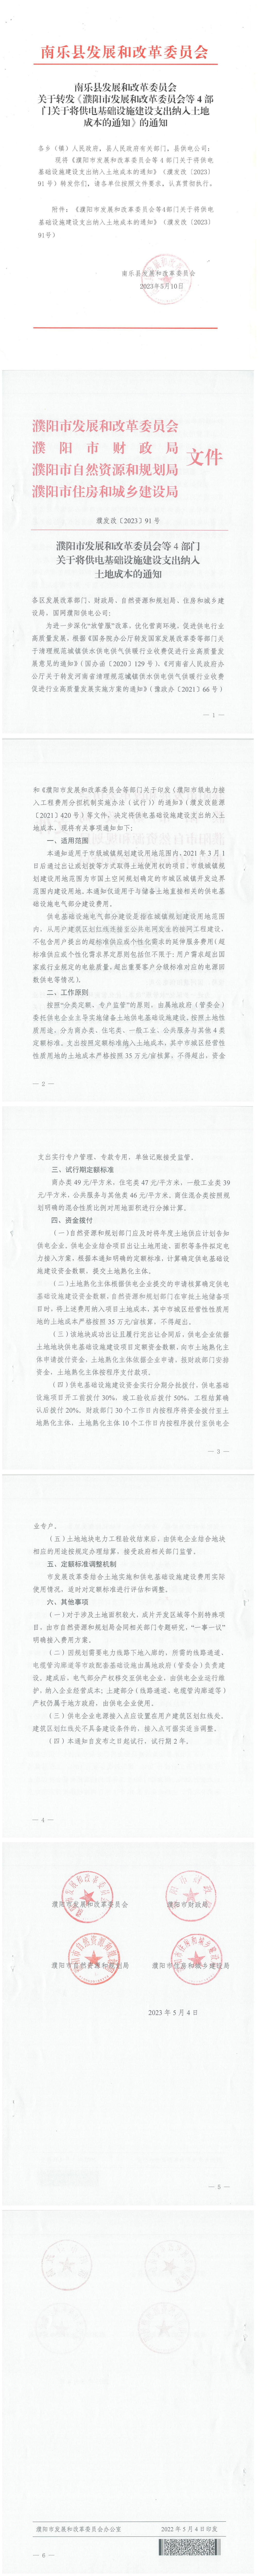 南乐县发展和改革委员会关于装《濮阳市发展和改革委员会等4部门关于将供电基础设施建设支出纳入土地成本》的通知（合并版）